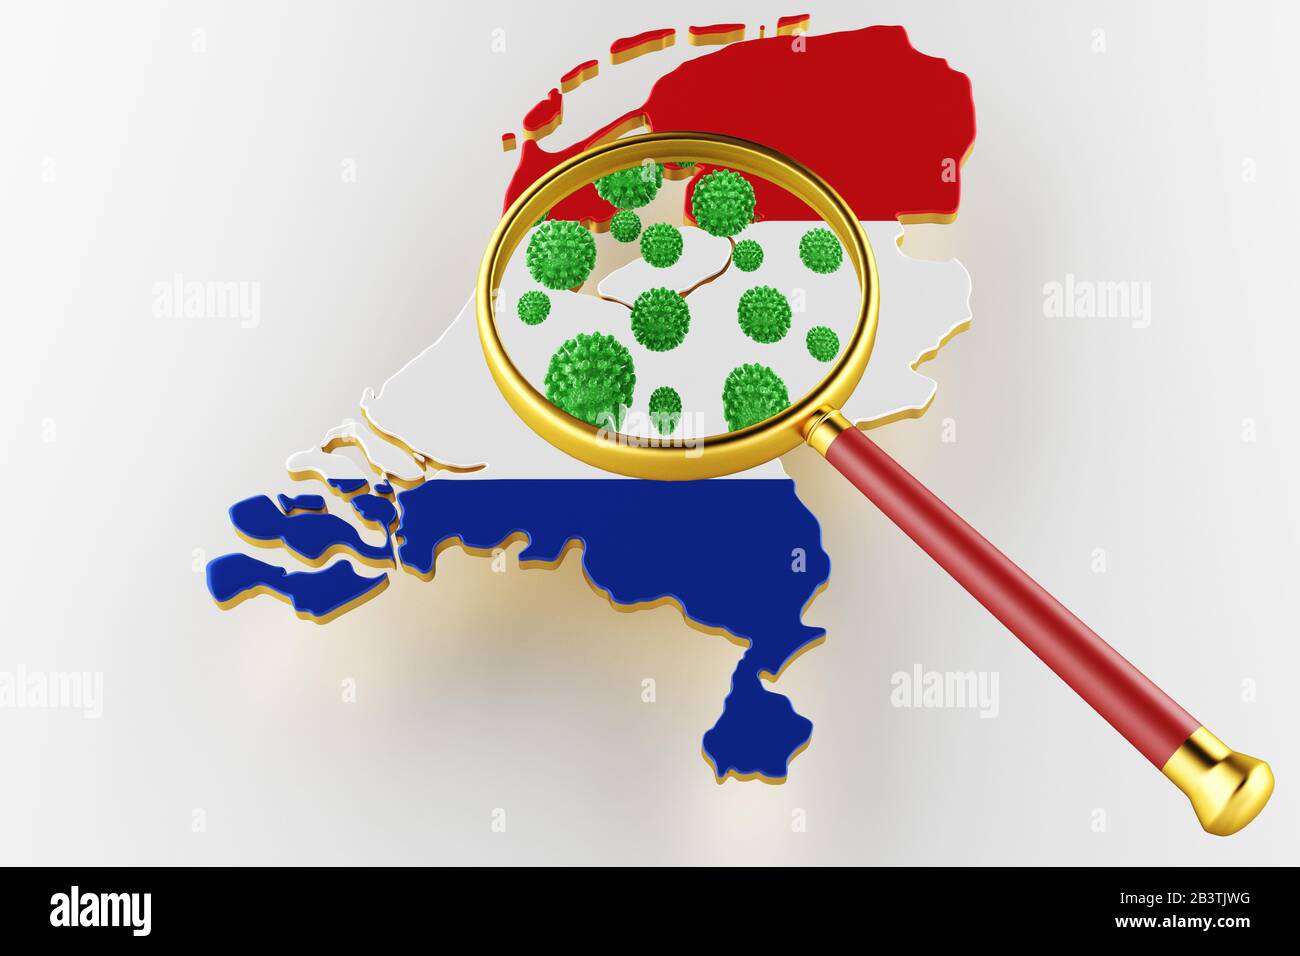 Virus 2019-ncov, Flur or Coronavirus with Netherlands map. Coronavirus from china. 3D rendering Stock Photo